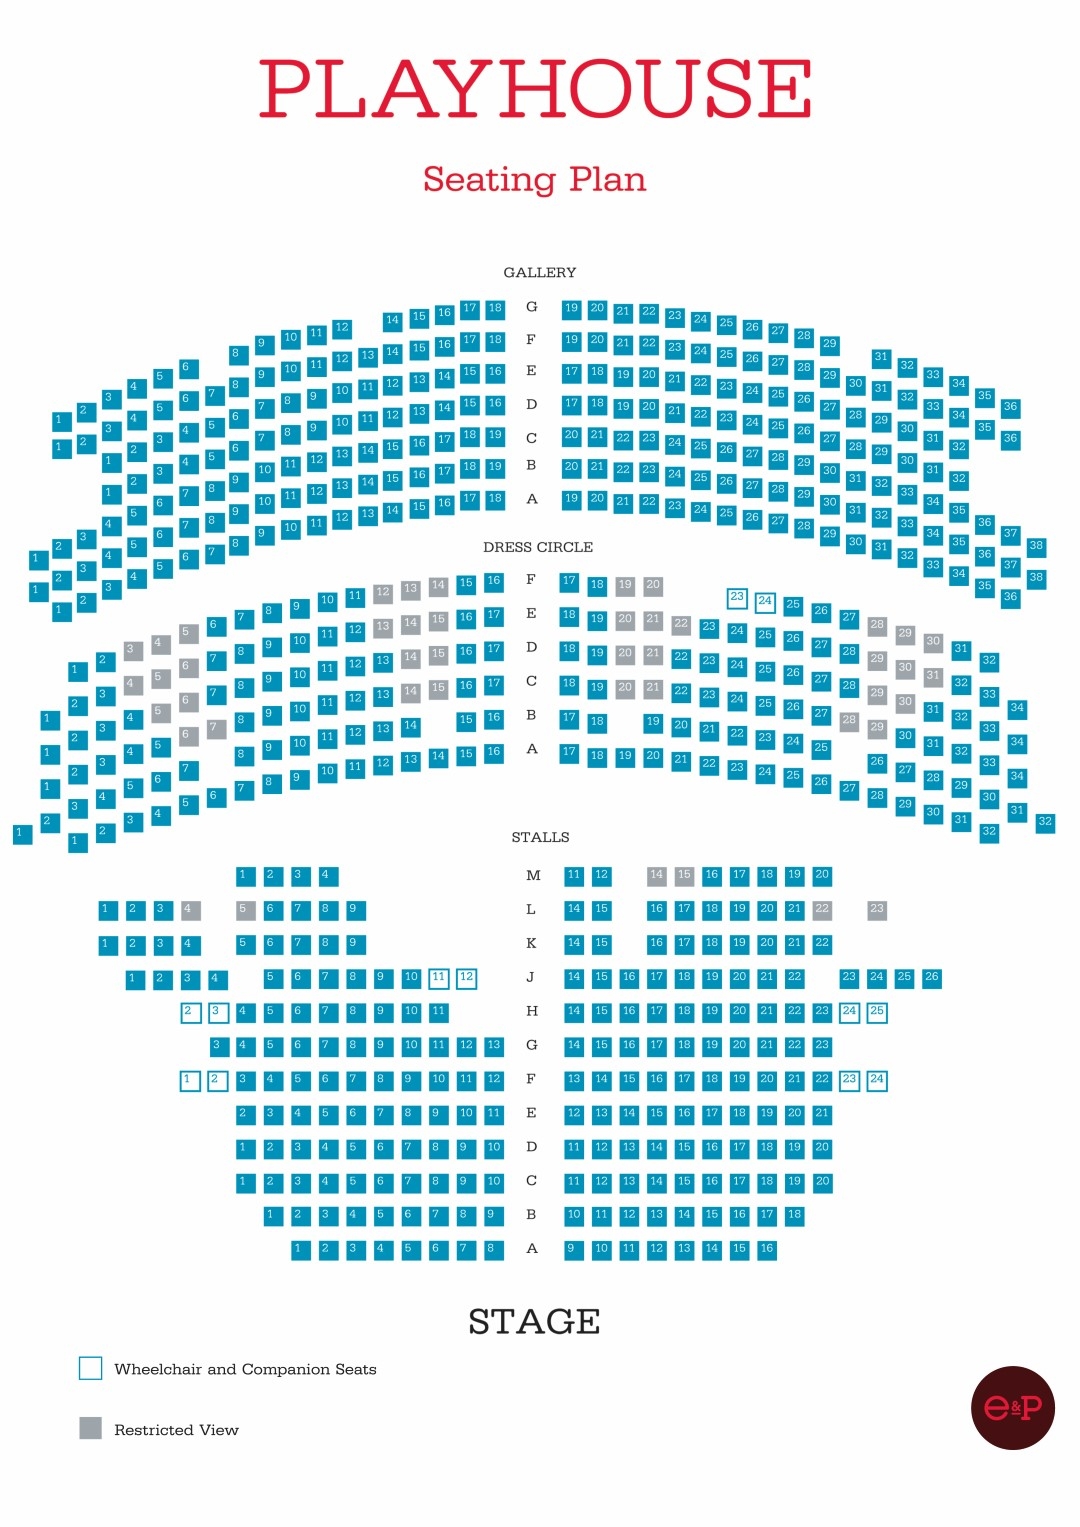 SS17_Playhouse_Seating Plan (Large).jpg